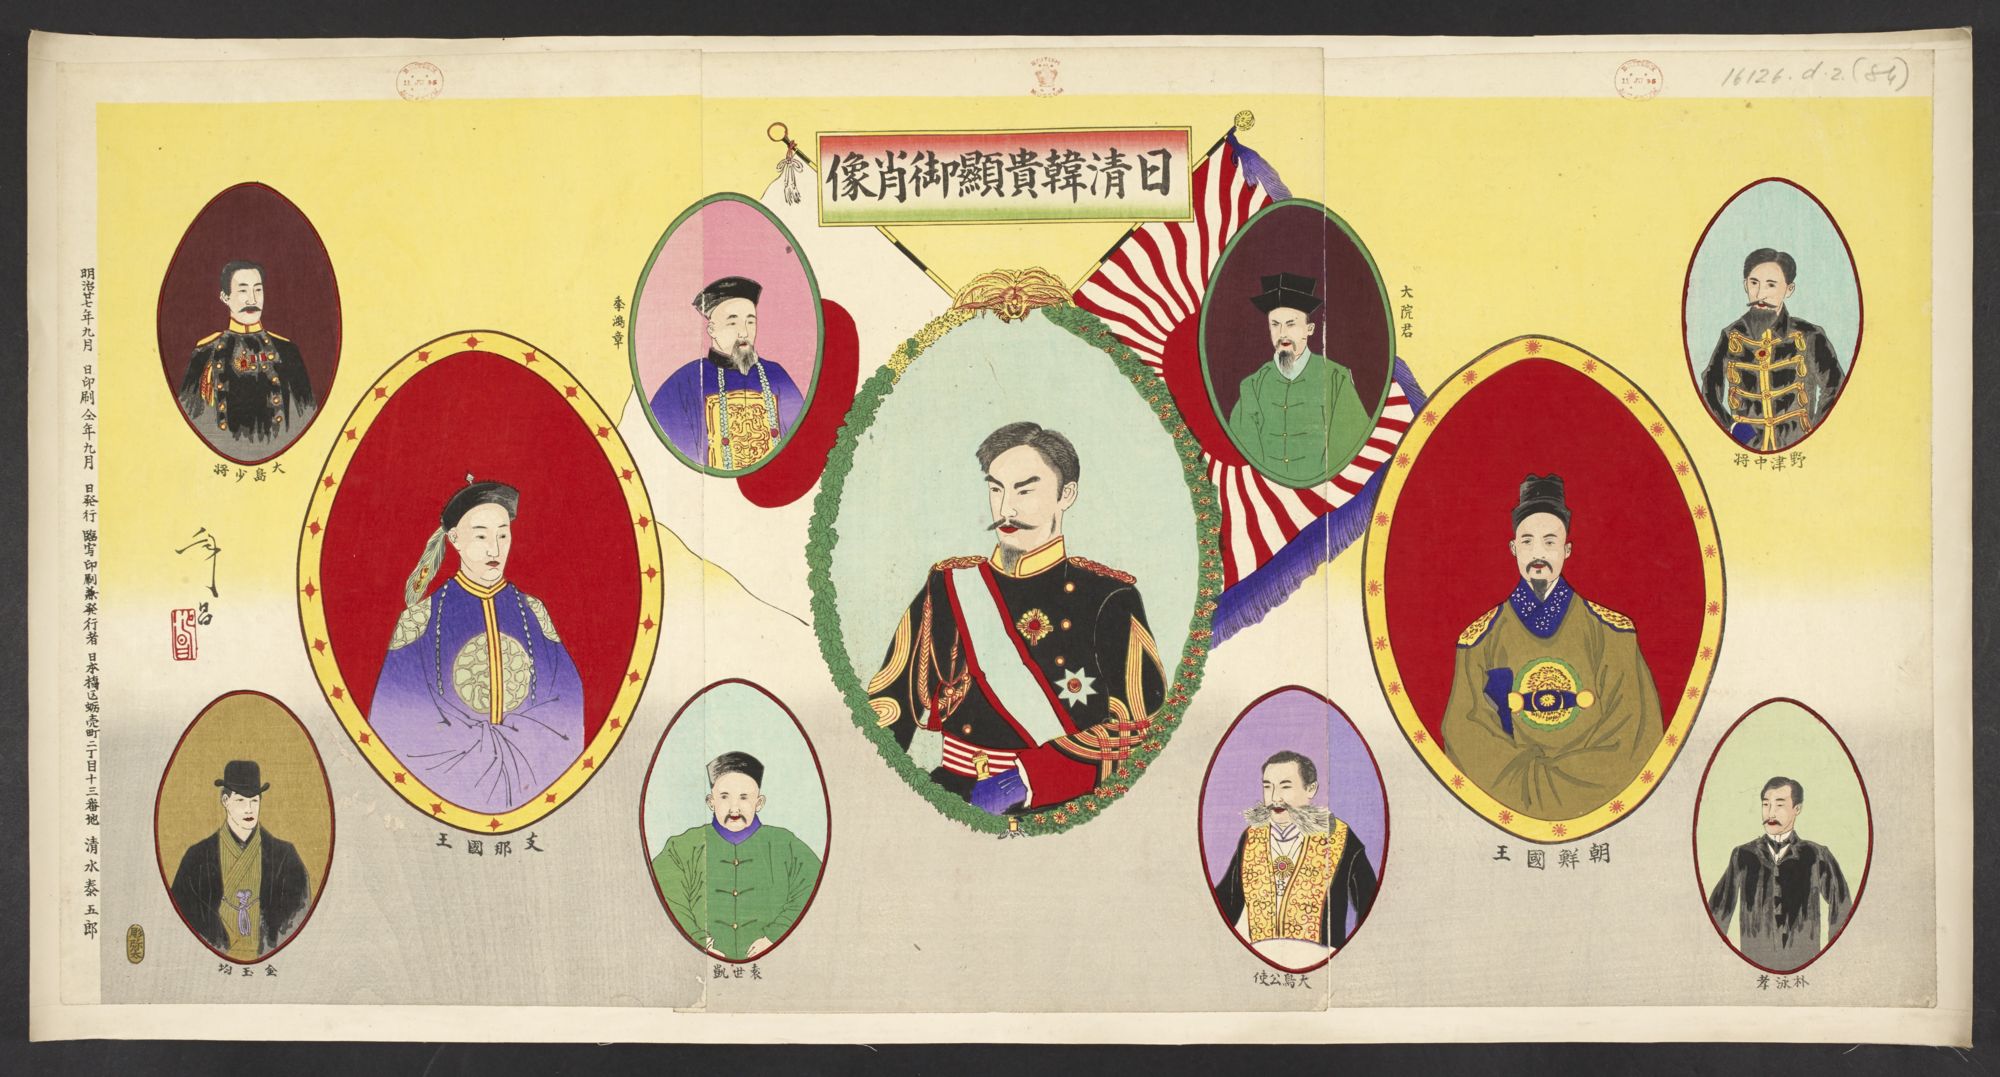 File:16126.d.2(84)-Japanese, Chinese and Korean dignitaries.jpg 